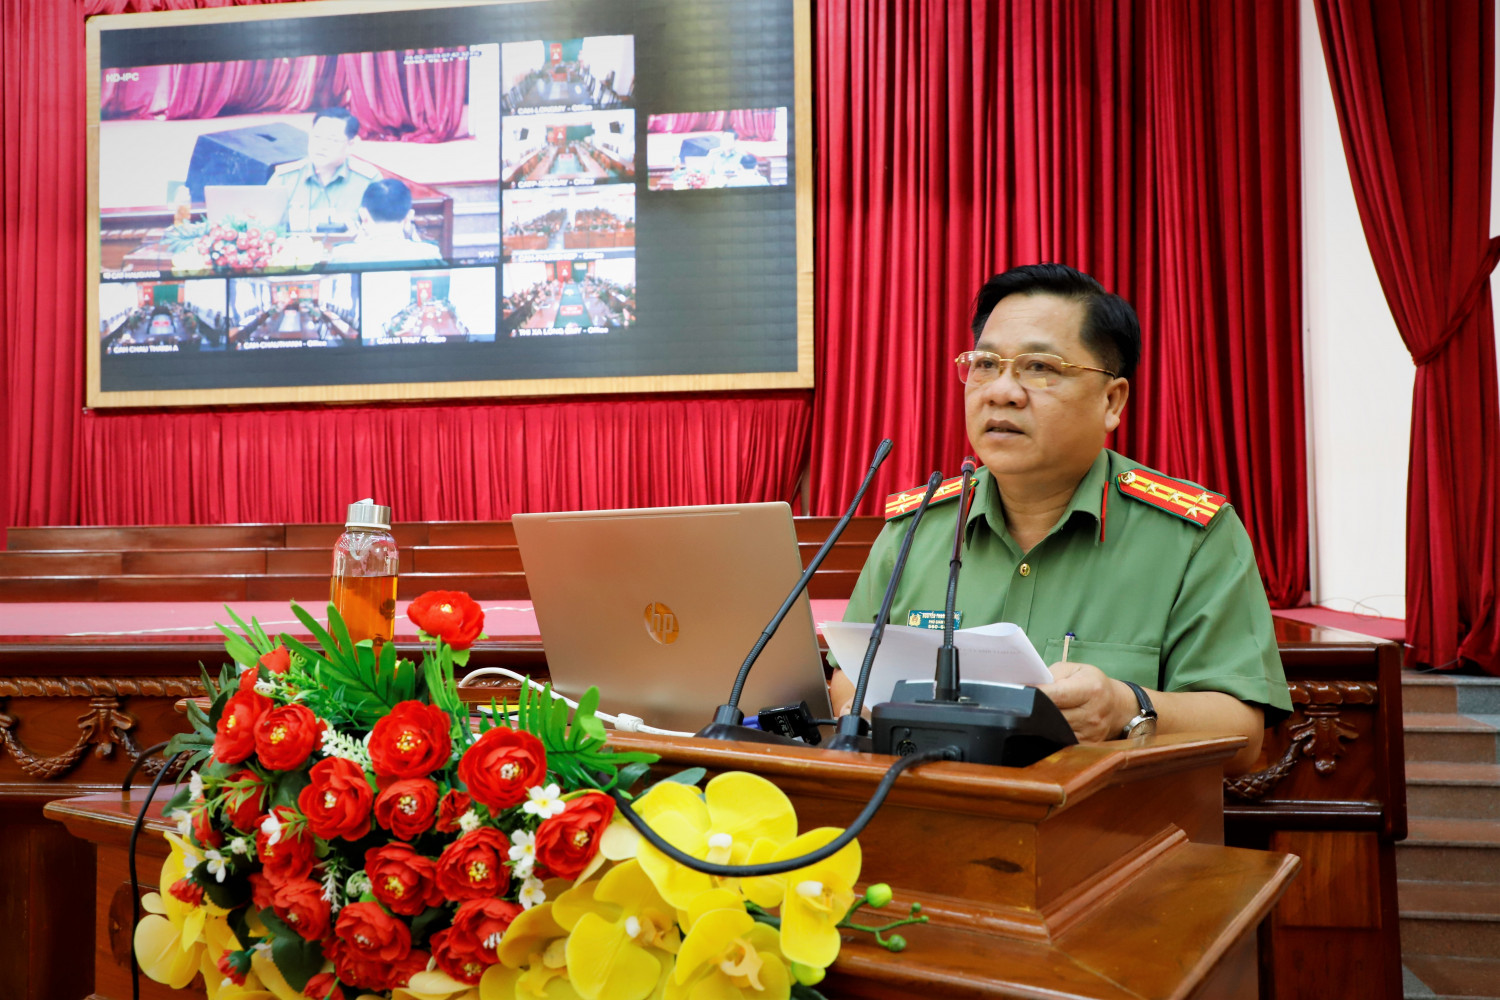 Đại tá Nguyễn Thanh Tràng, Ủy viên Ban Thường vụ Đảng ủy, Phó Giám đốc Công an tỉnh phát biểu tại buổi sinh hoạt